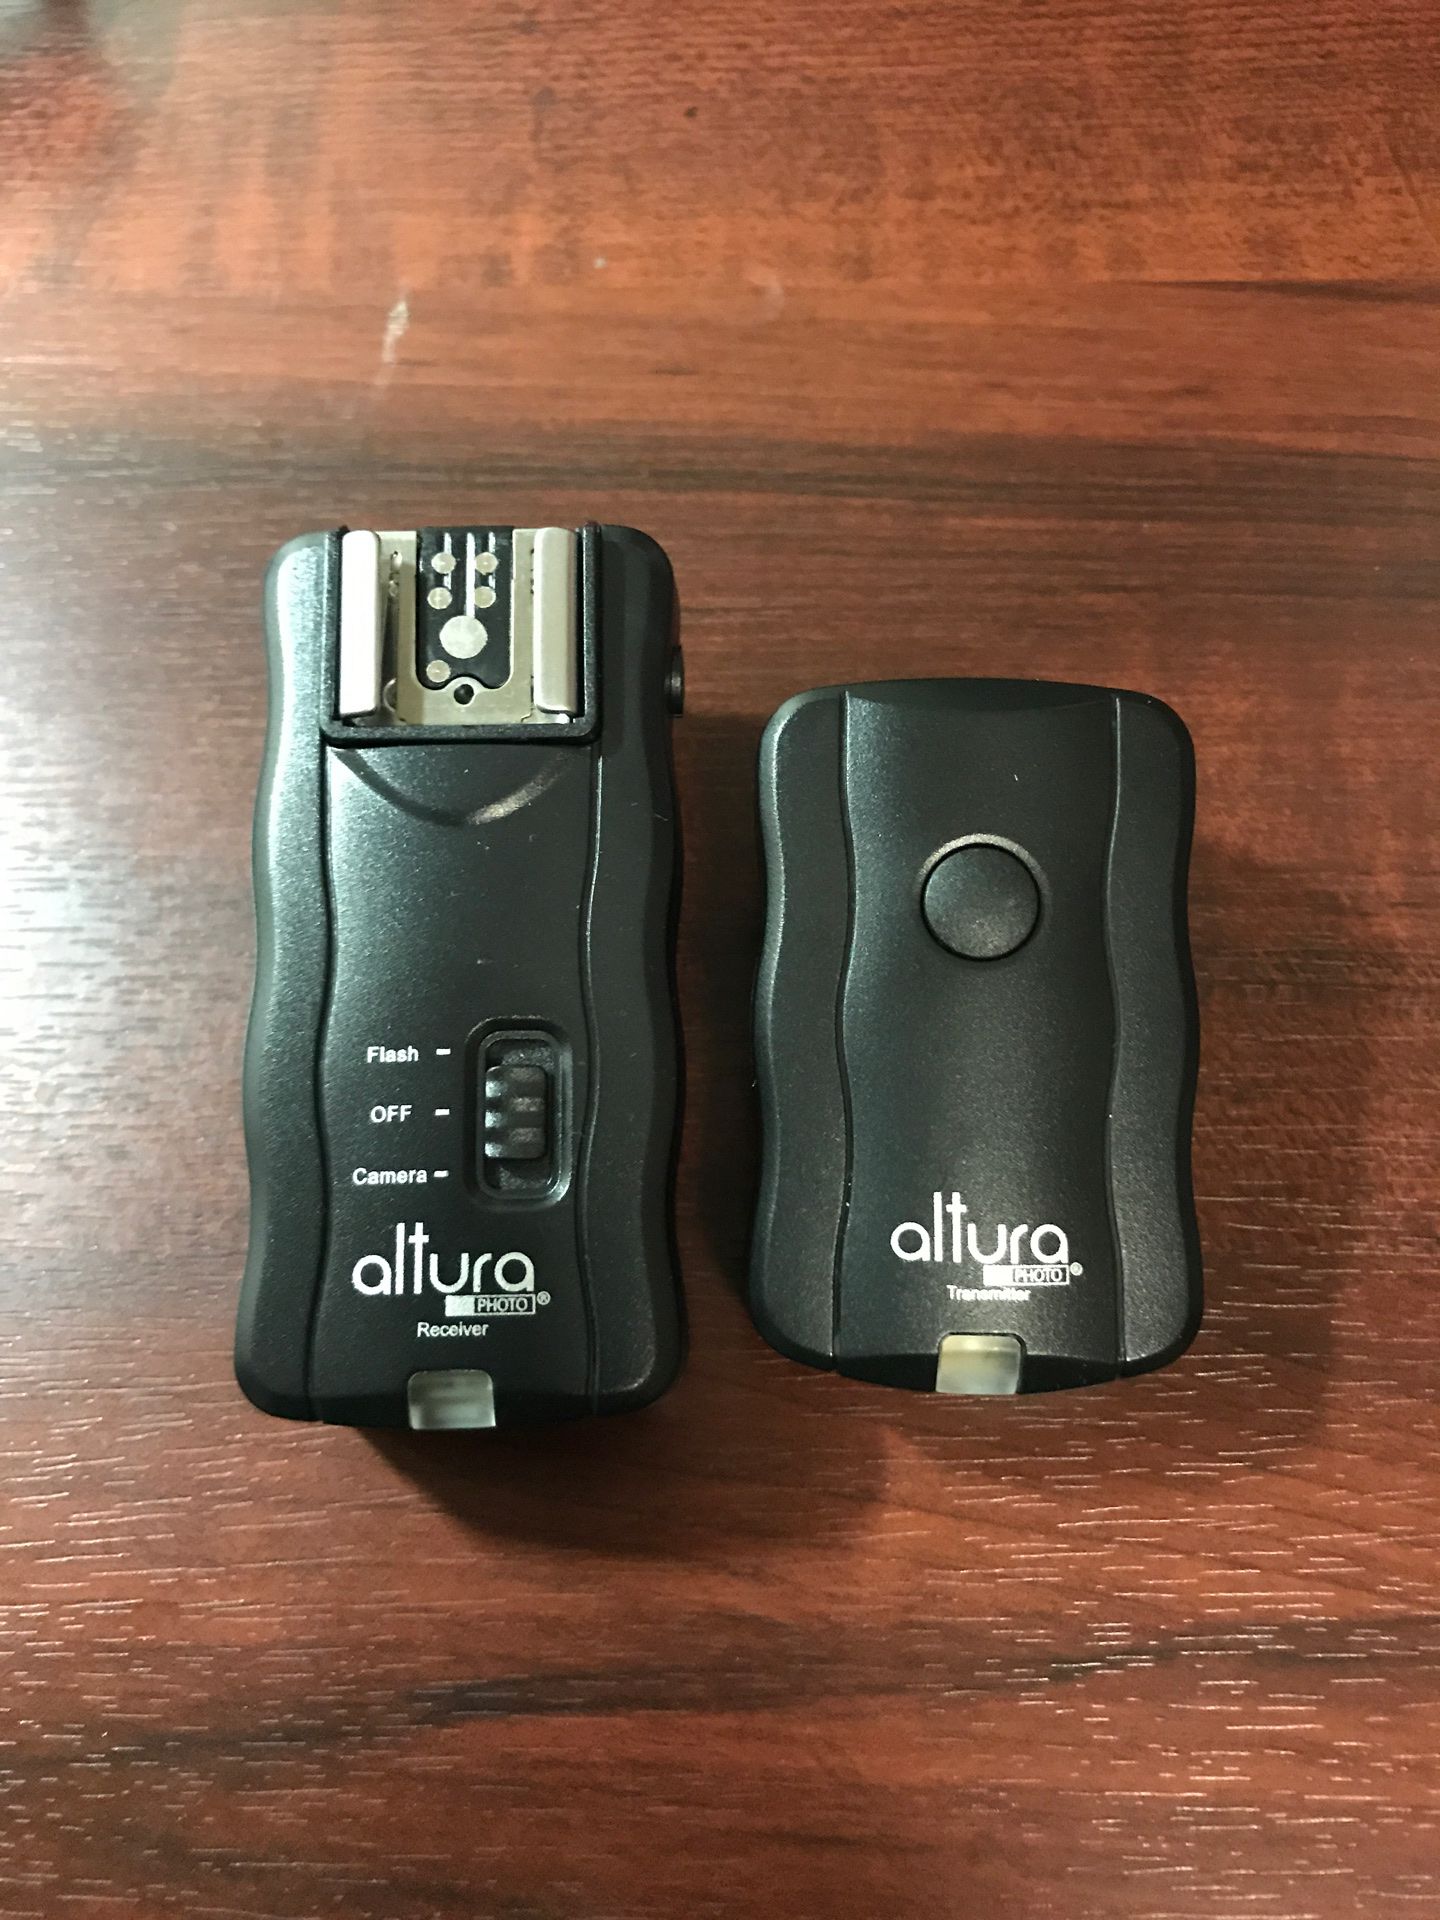 Altura Wireless Flash Trigger Set 1 Transmitter + 1 Receiver for DSLR Cameras